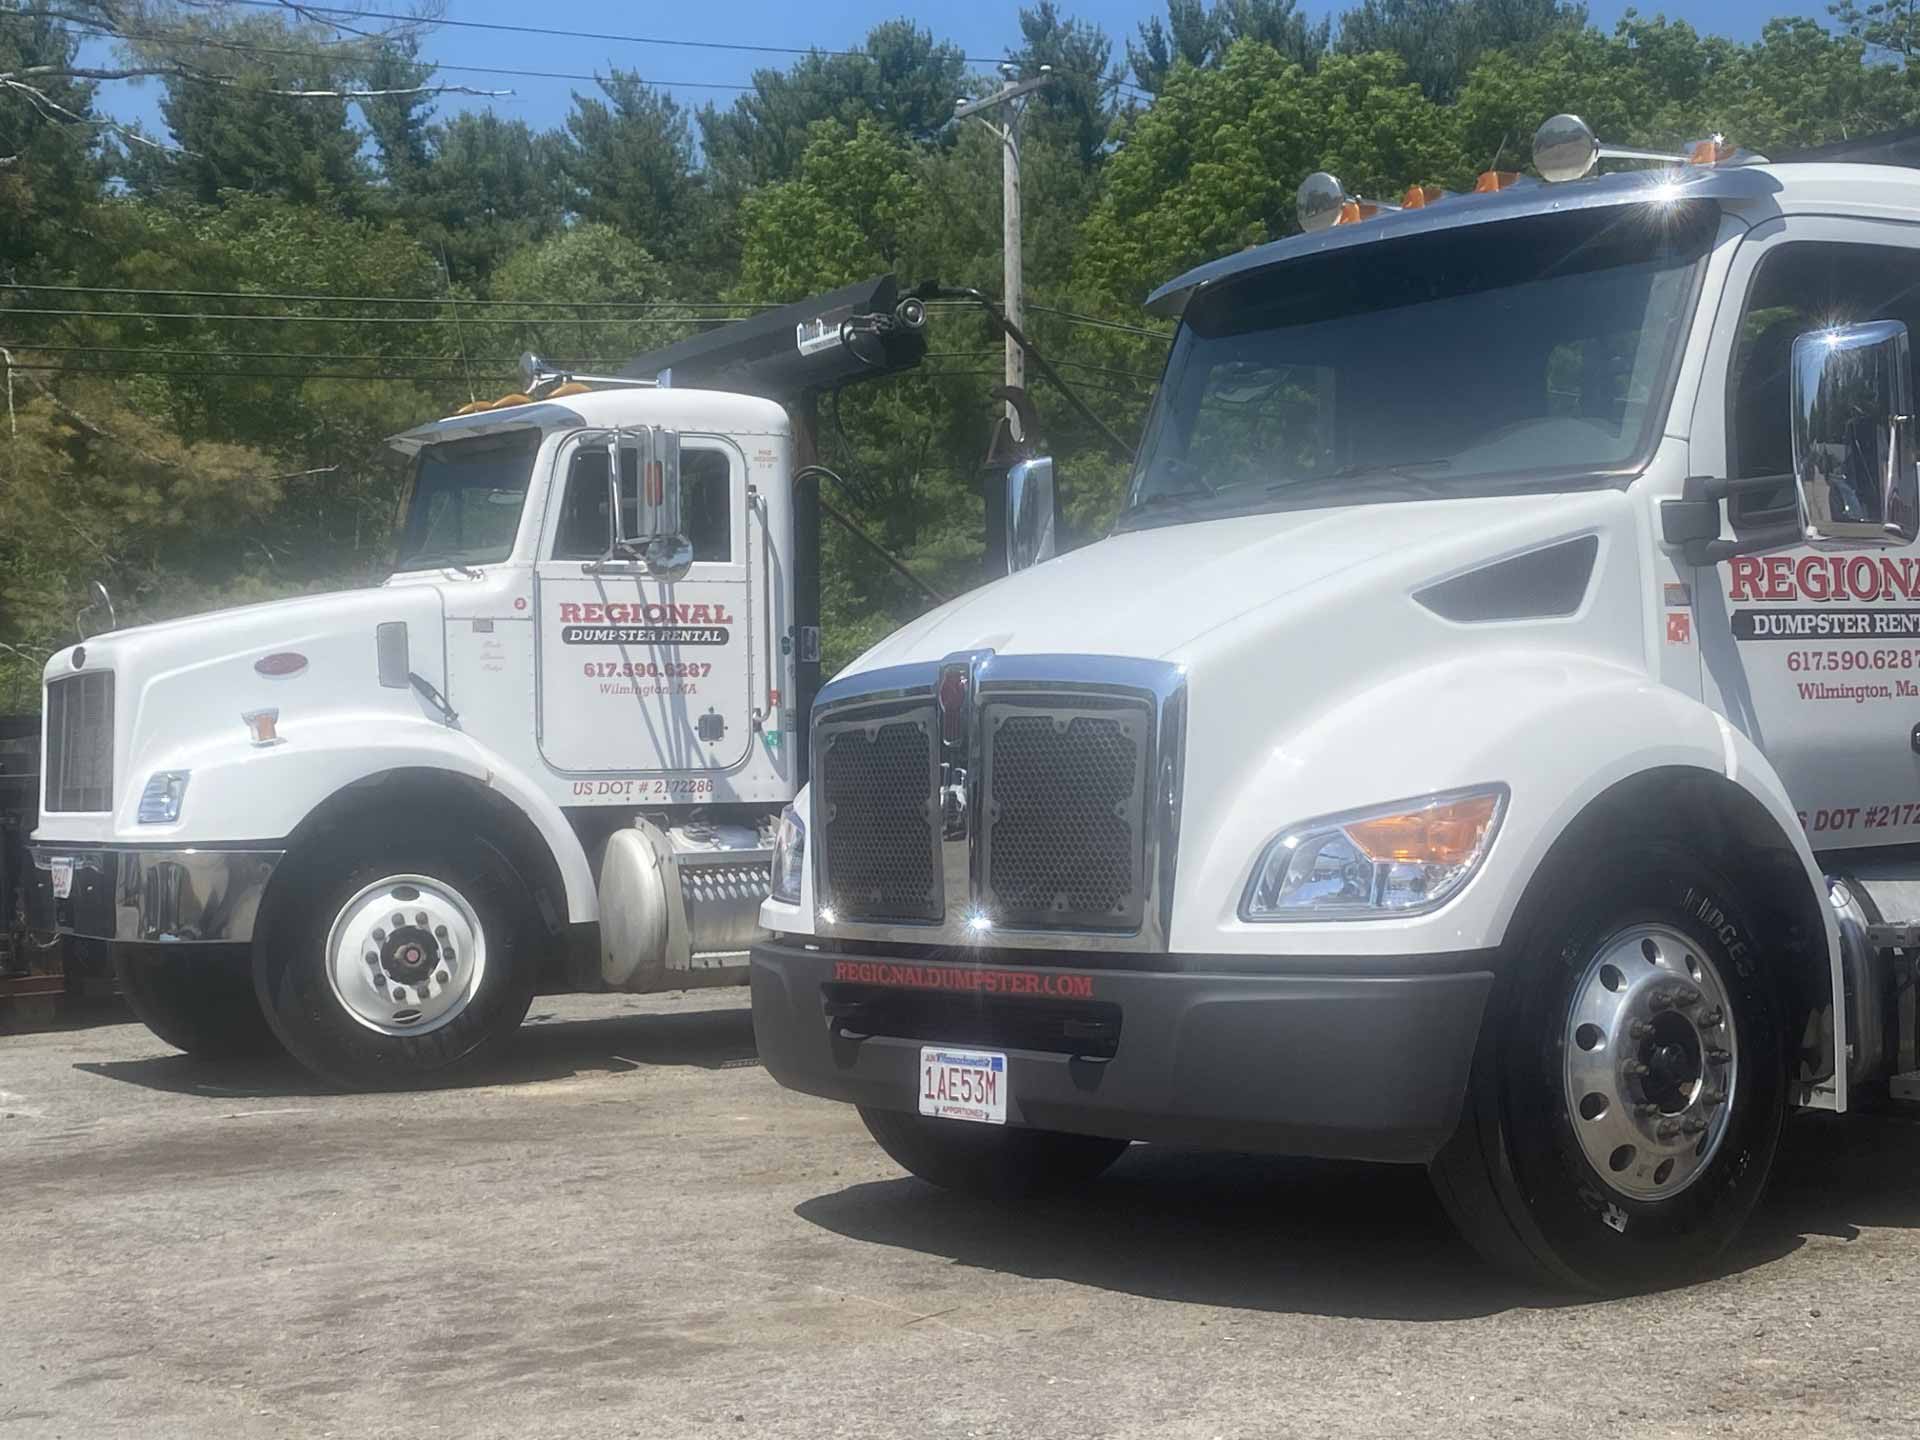 Two trucks from the Regional Dumpster Rental fleet